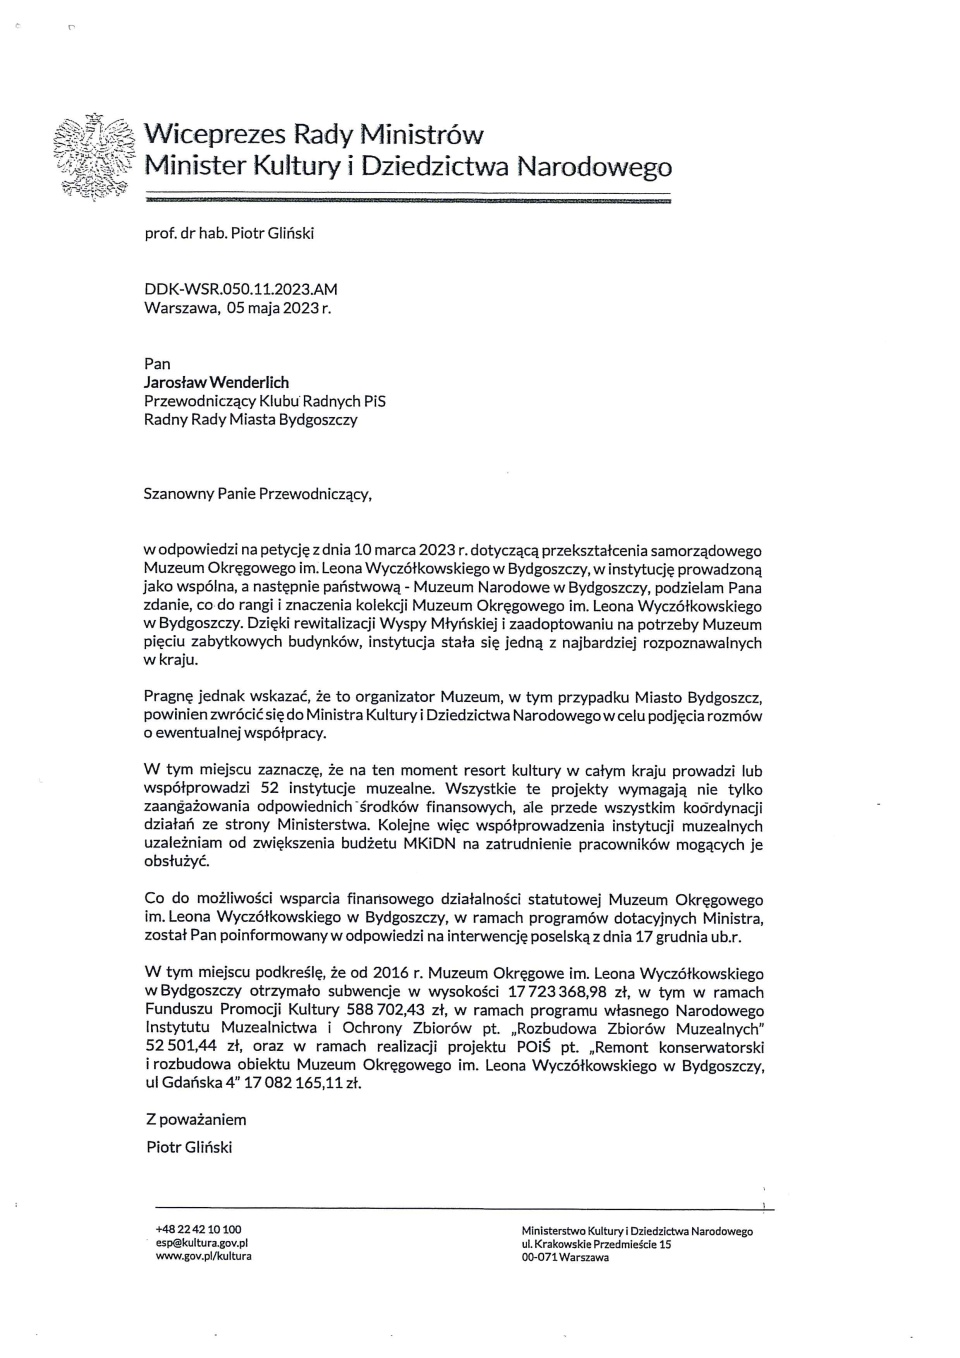 Odpowiedź na petycję do premiera Piotra Glińskiego